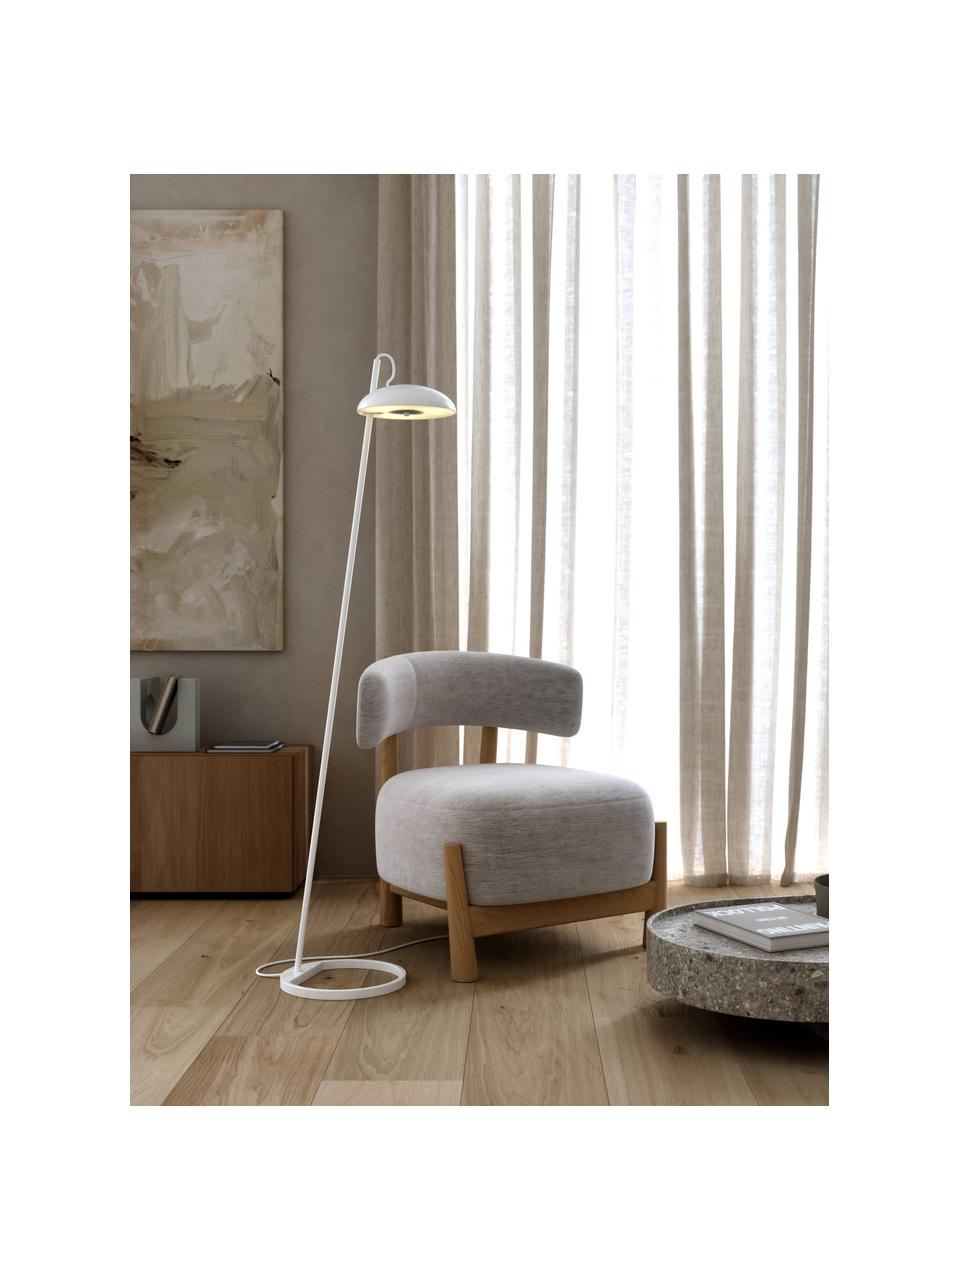 Lámpara de pie Versale, Cable: cubierto en tela, Blanco, Al 140 cm